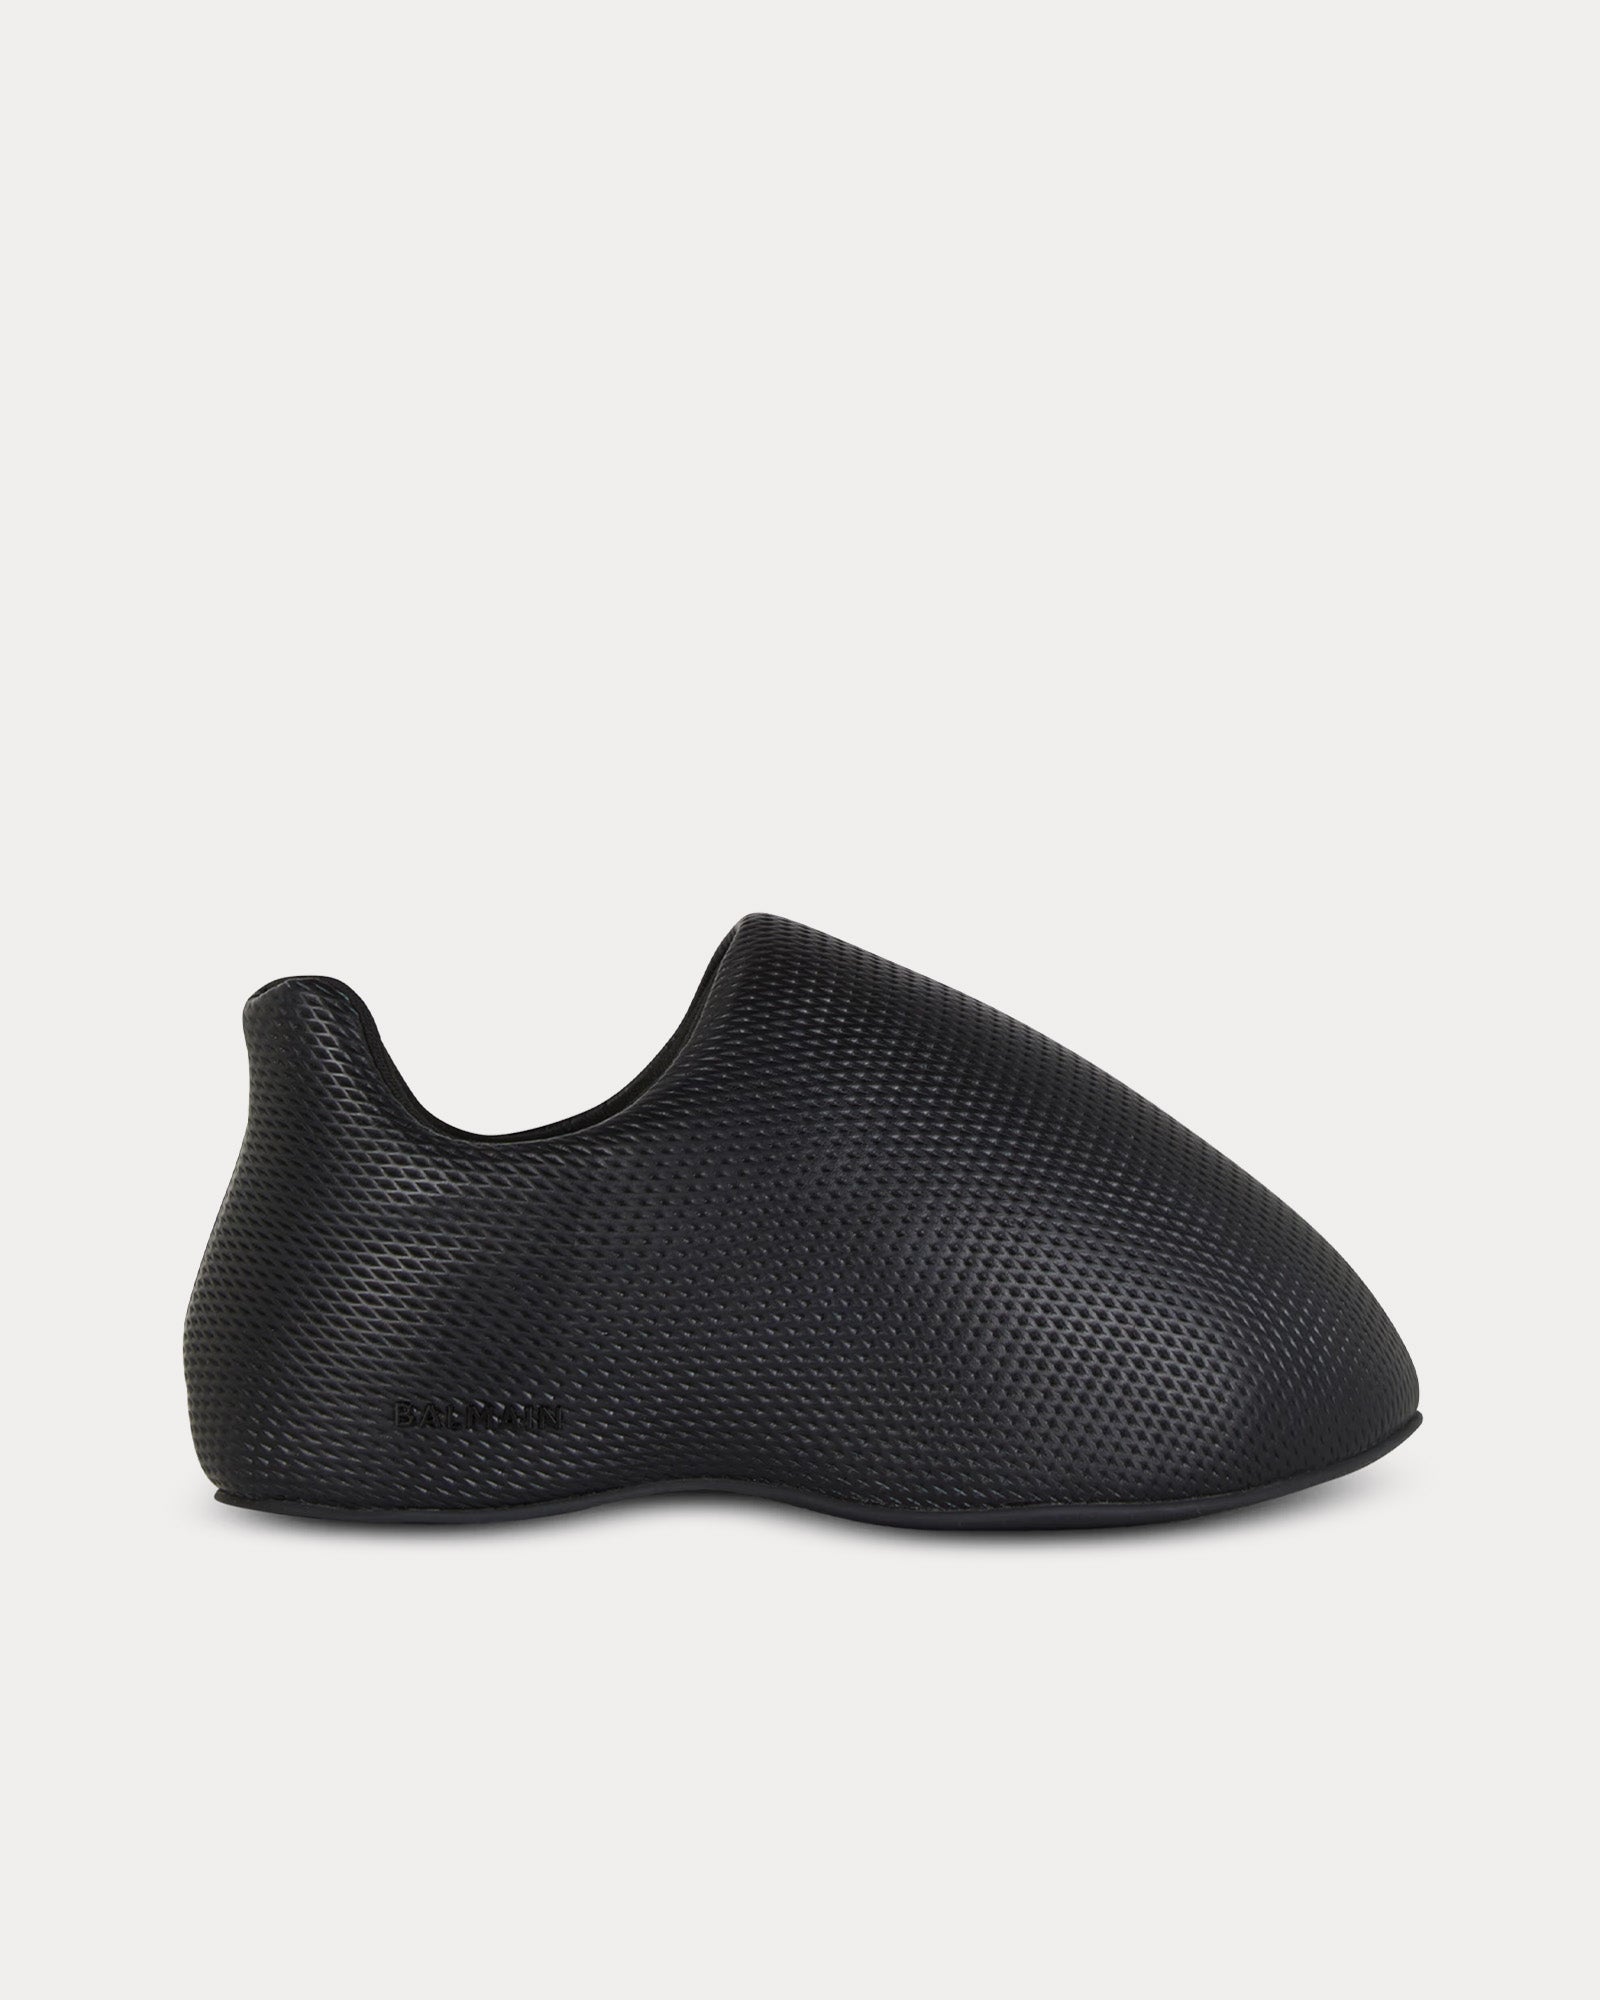 Balmain - B-Cloud Embossed Leather Black Slip On Sneakers